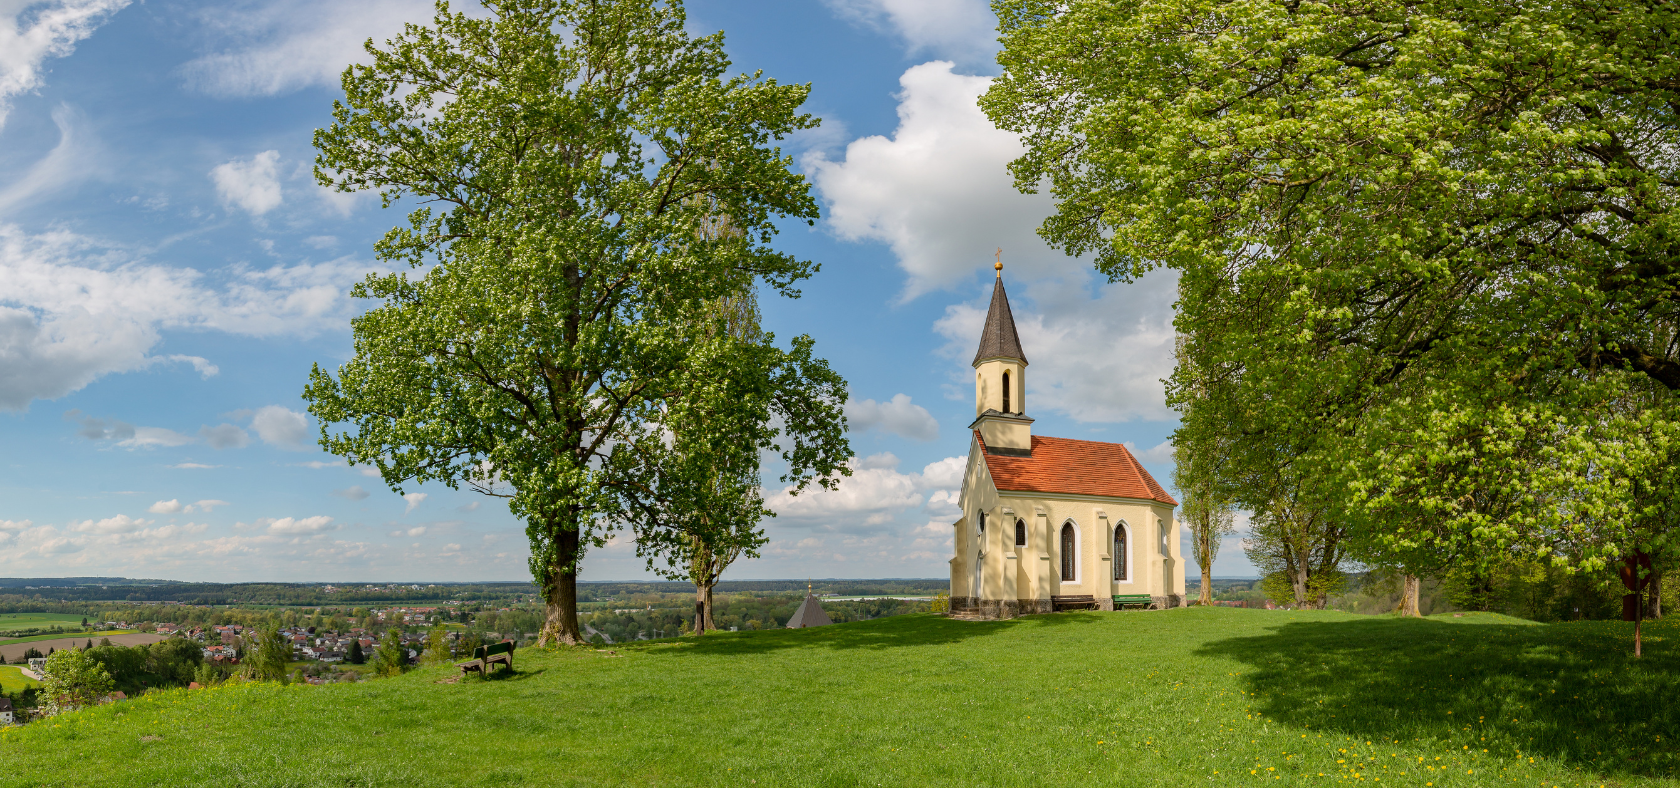 Schlosskapelle Kraiburg, Kapelle auf einem Berg im Grünen